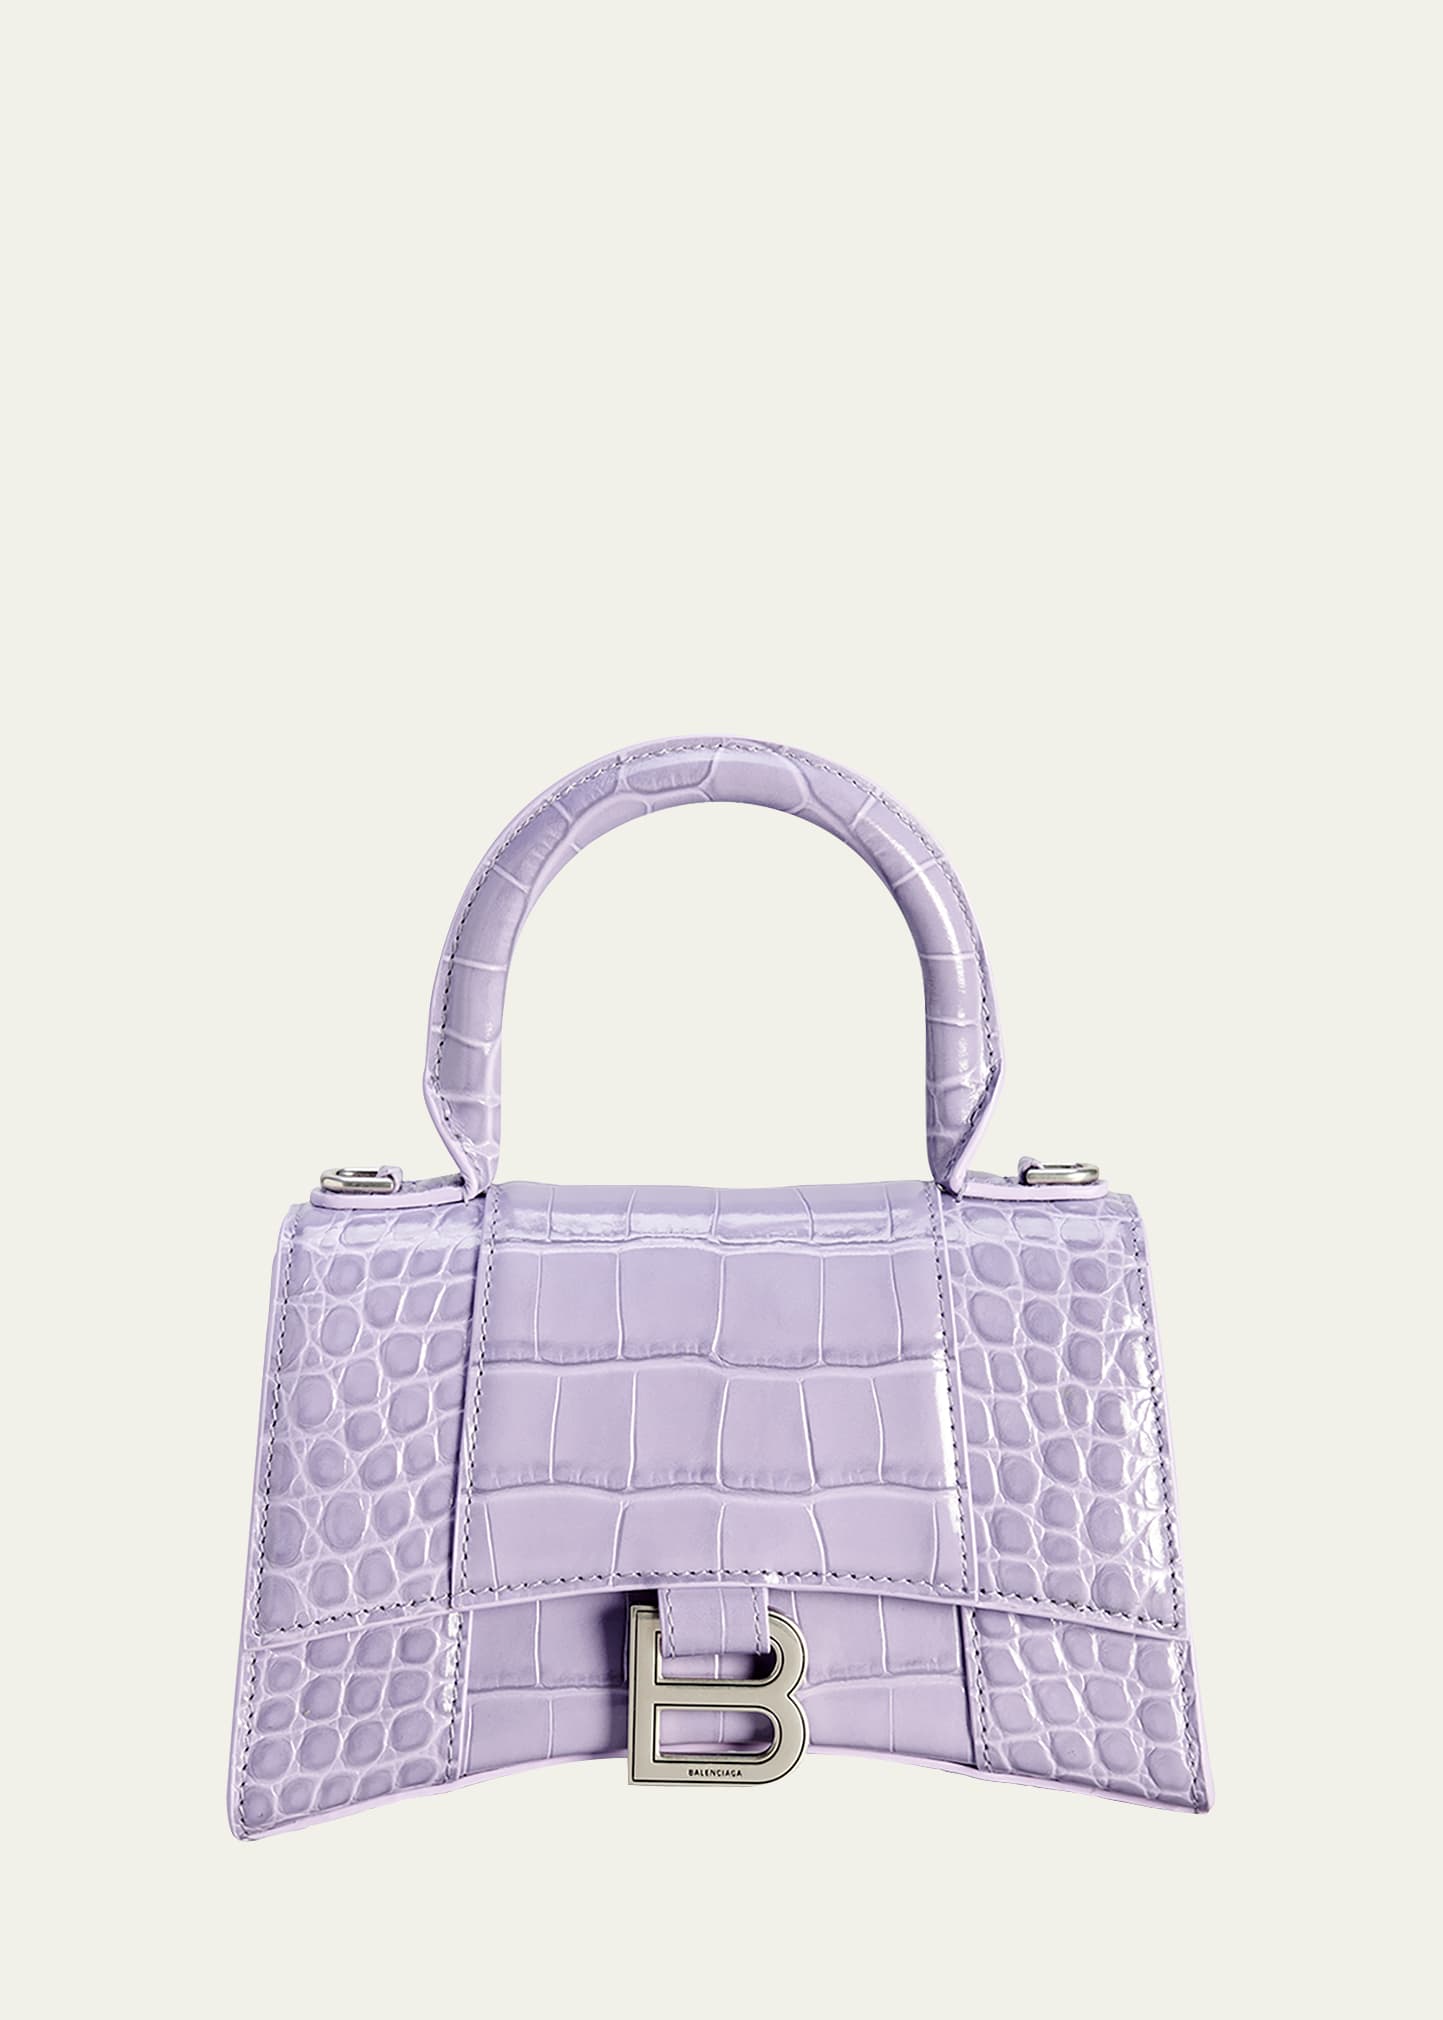 Balenciaga Hourglass XS Crocodile-Embossed Top-Handle Bag